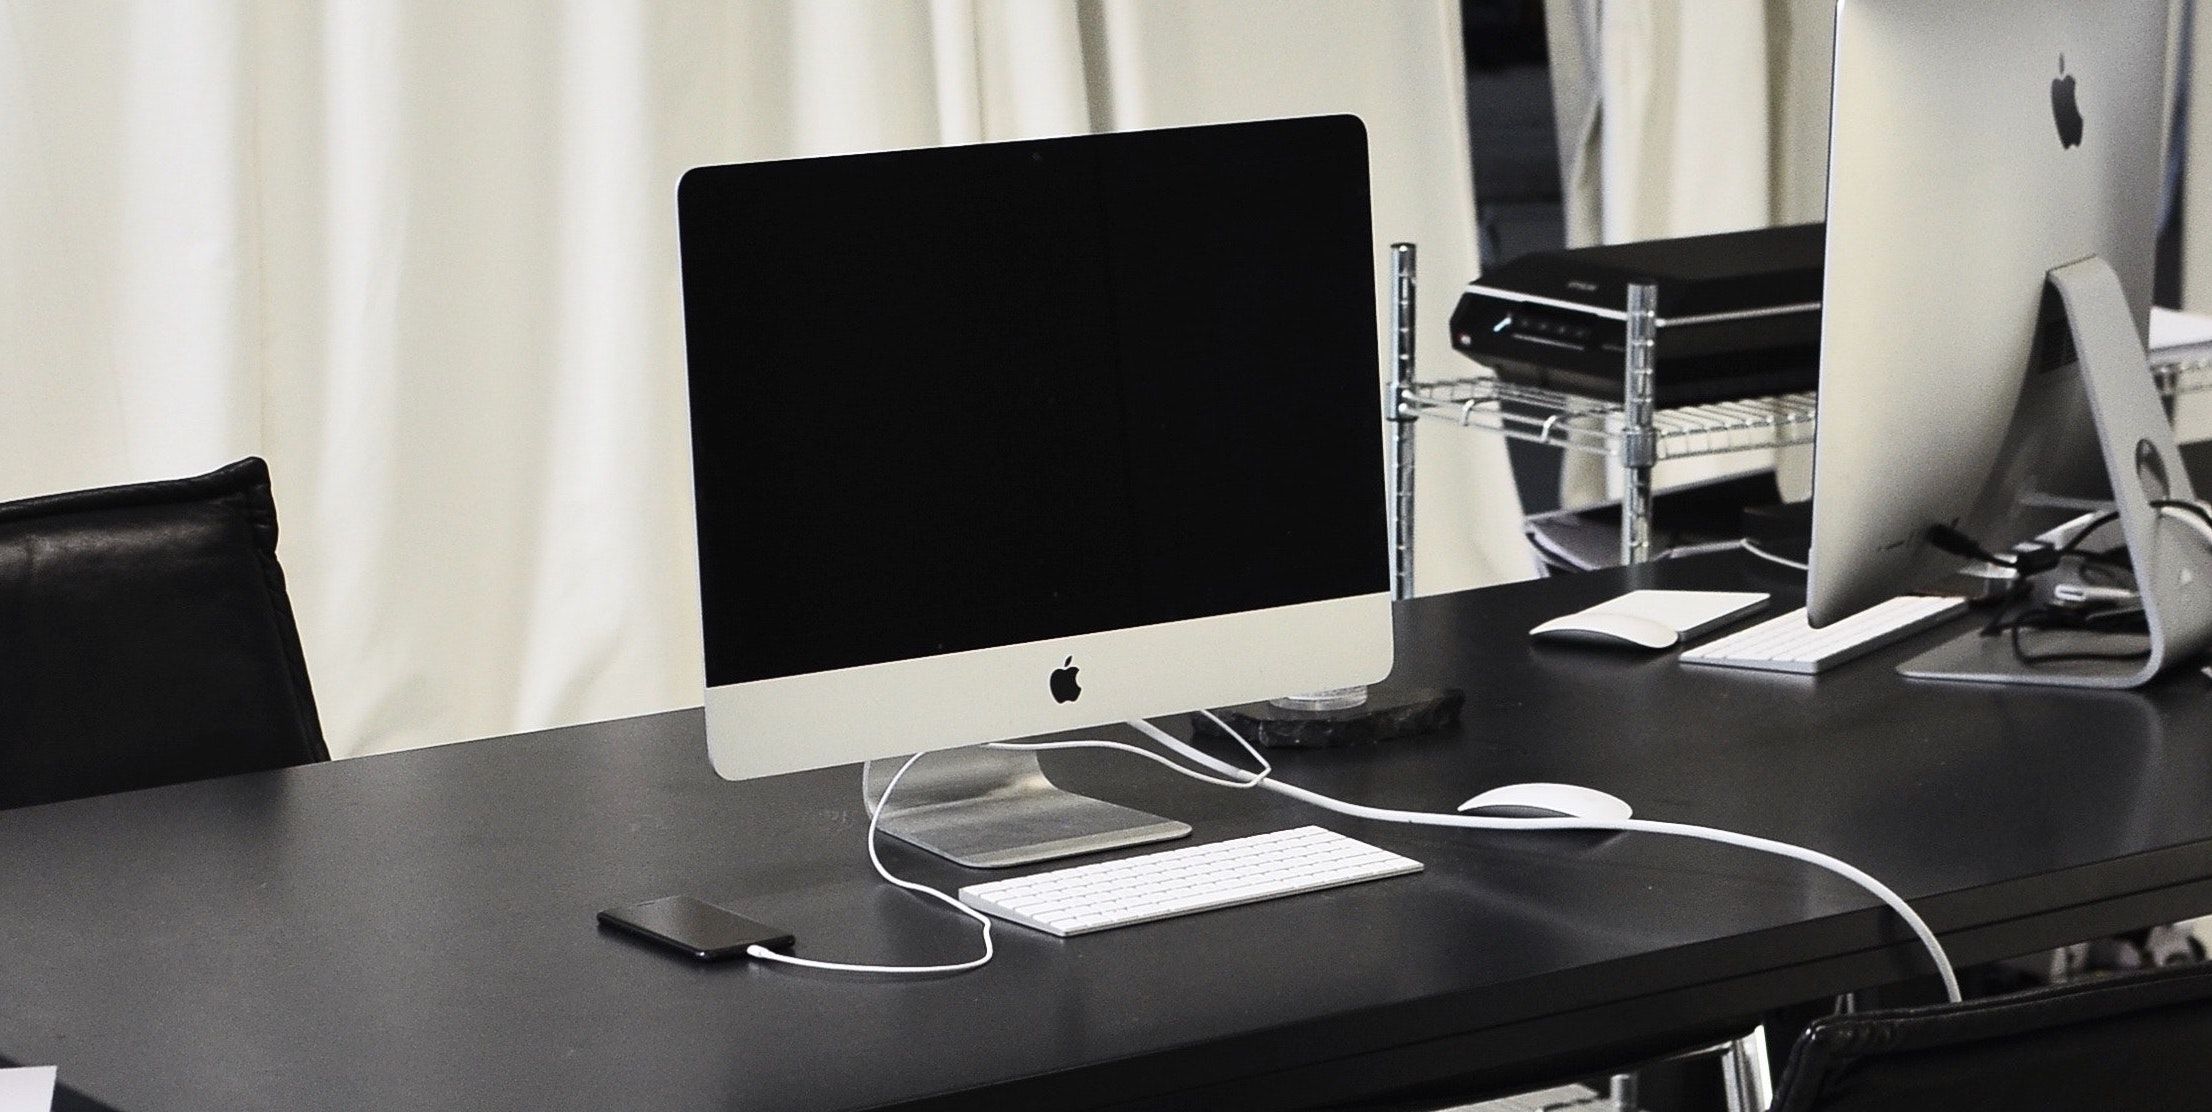 iPhone charging beside iMac - Che cos’è la ricarica della batteria ottimizzata su iPhone e Mac?